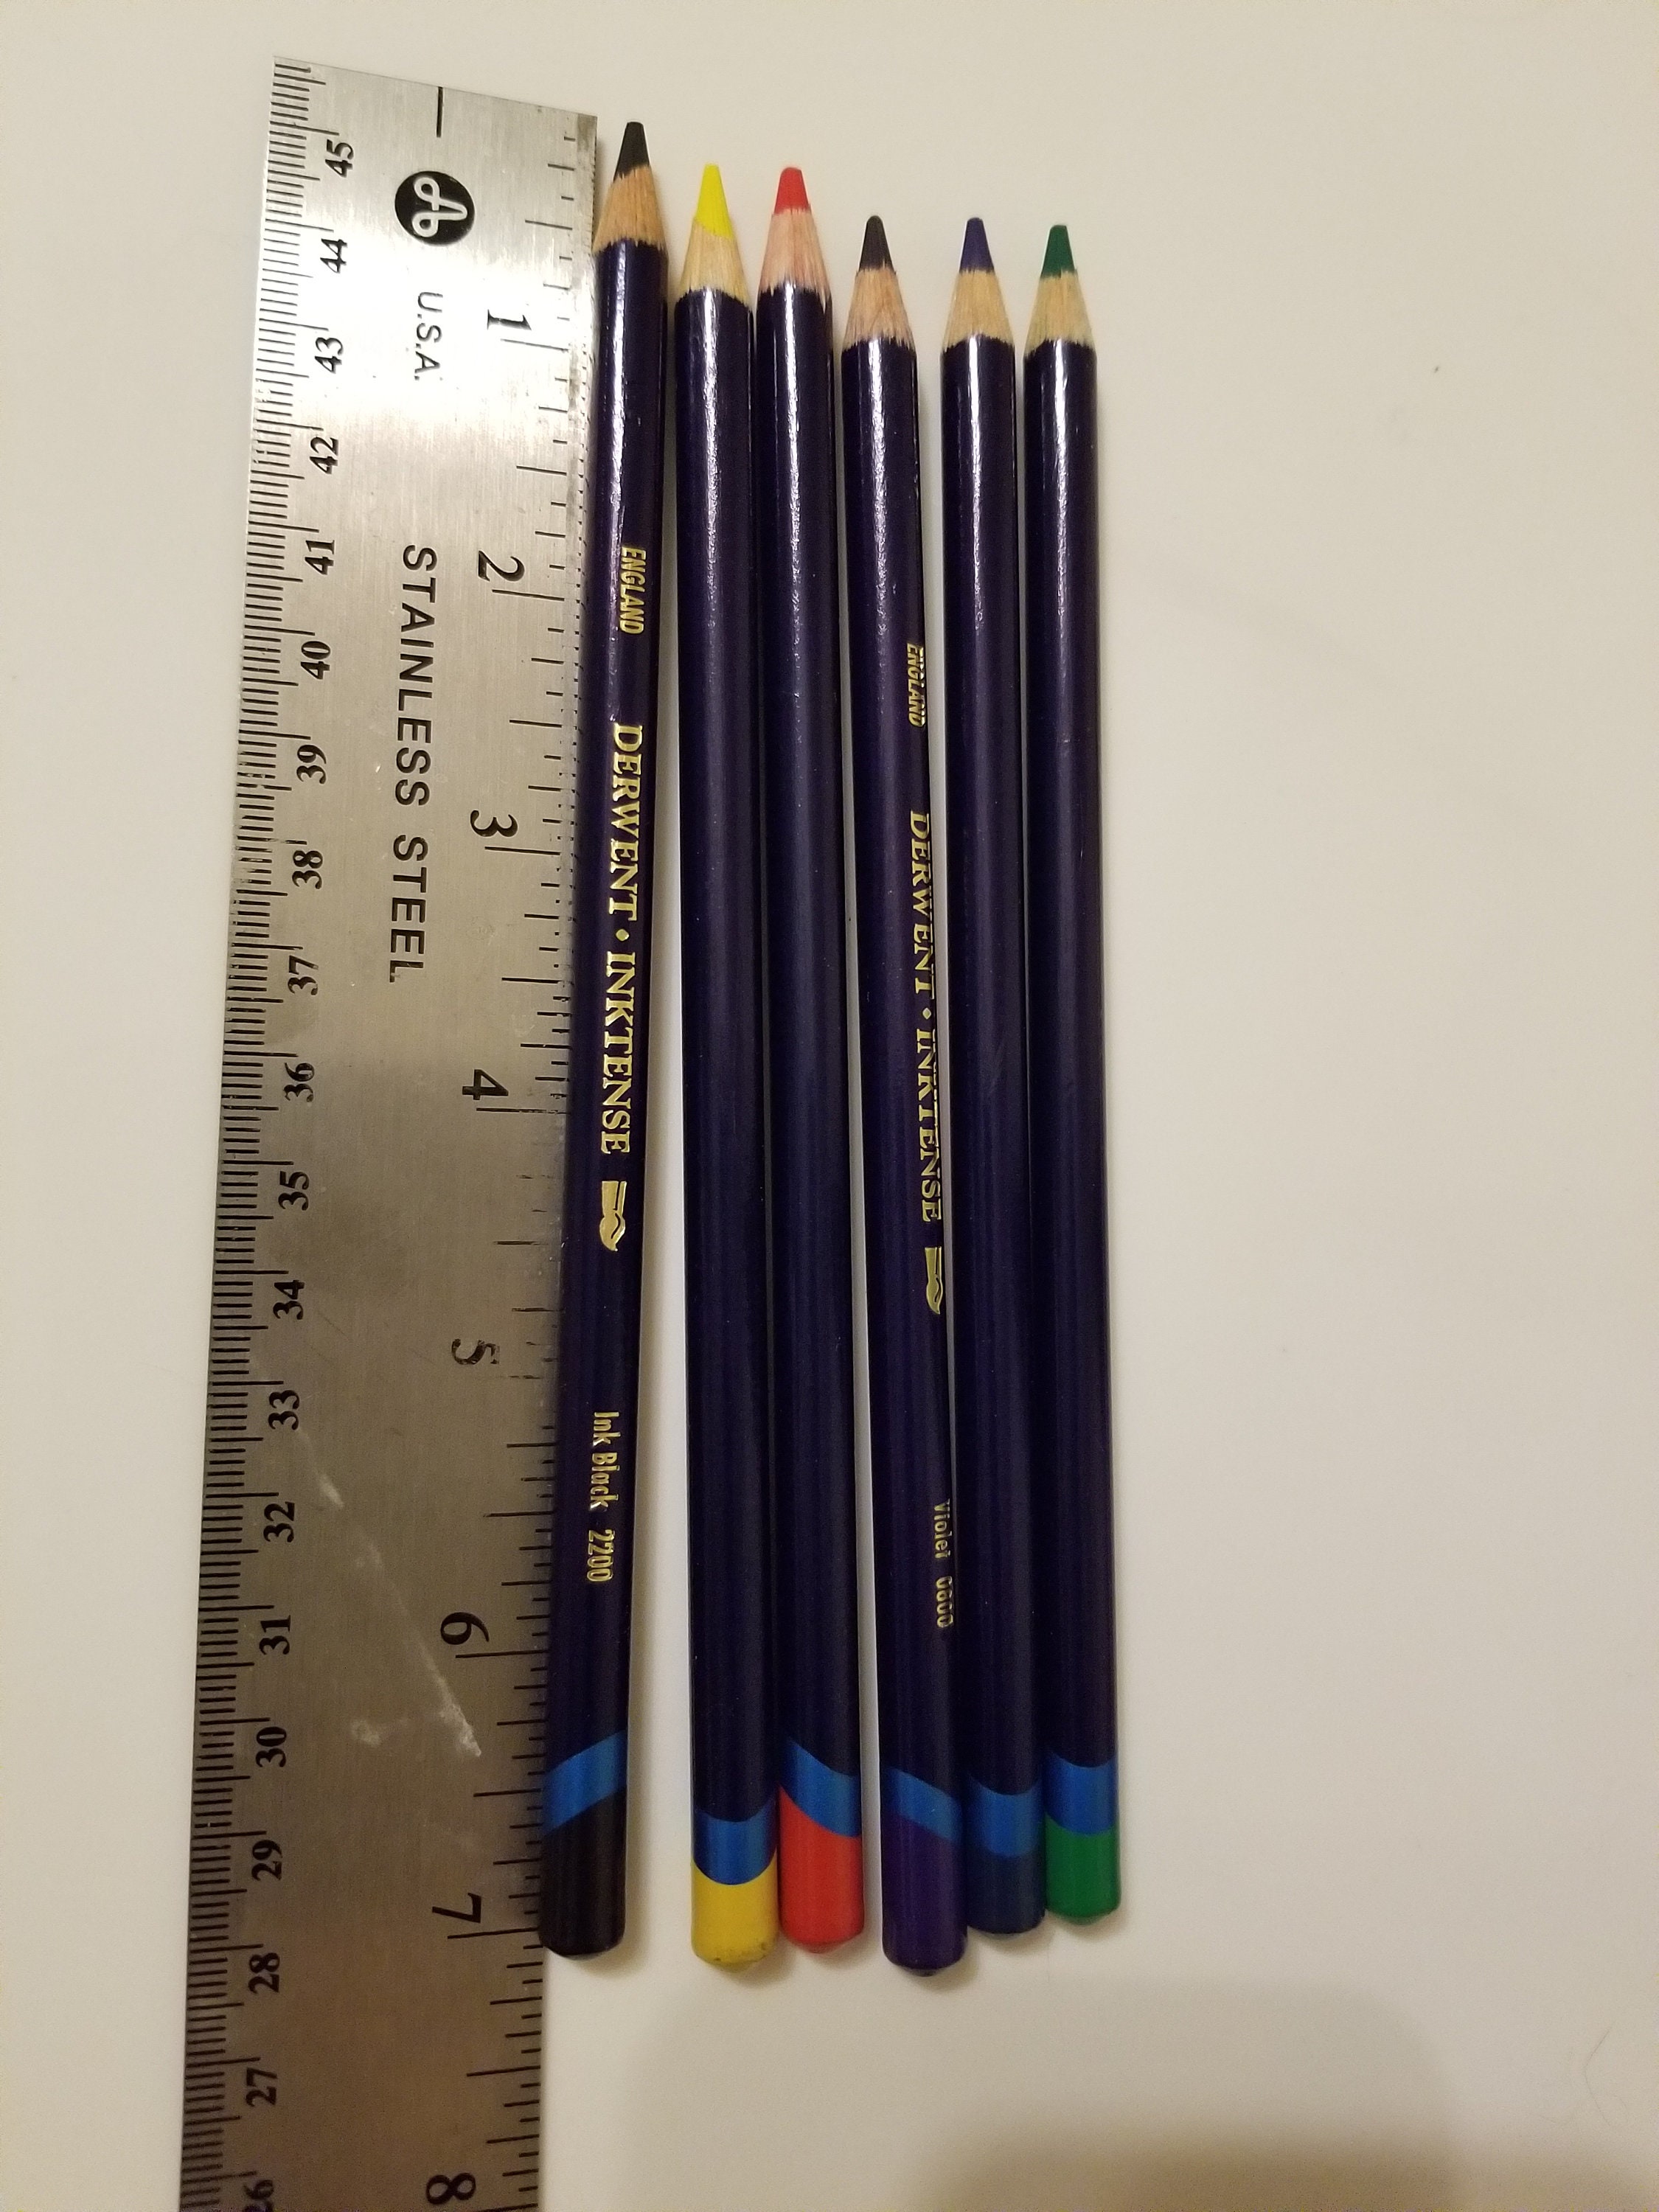 Derwent Inktense Pencils 36/Pkg